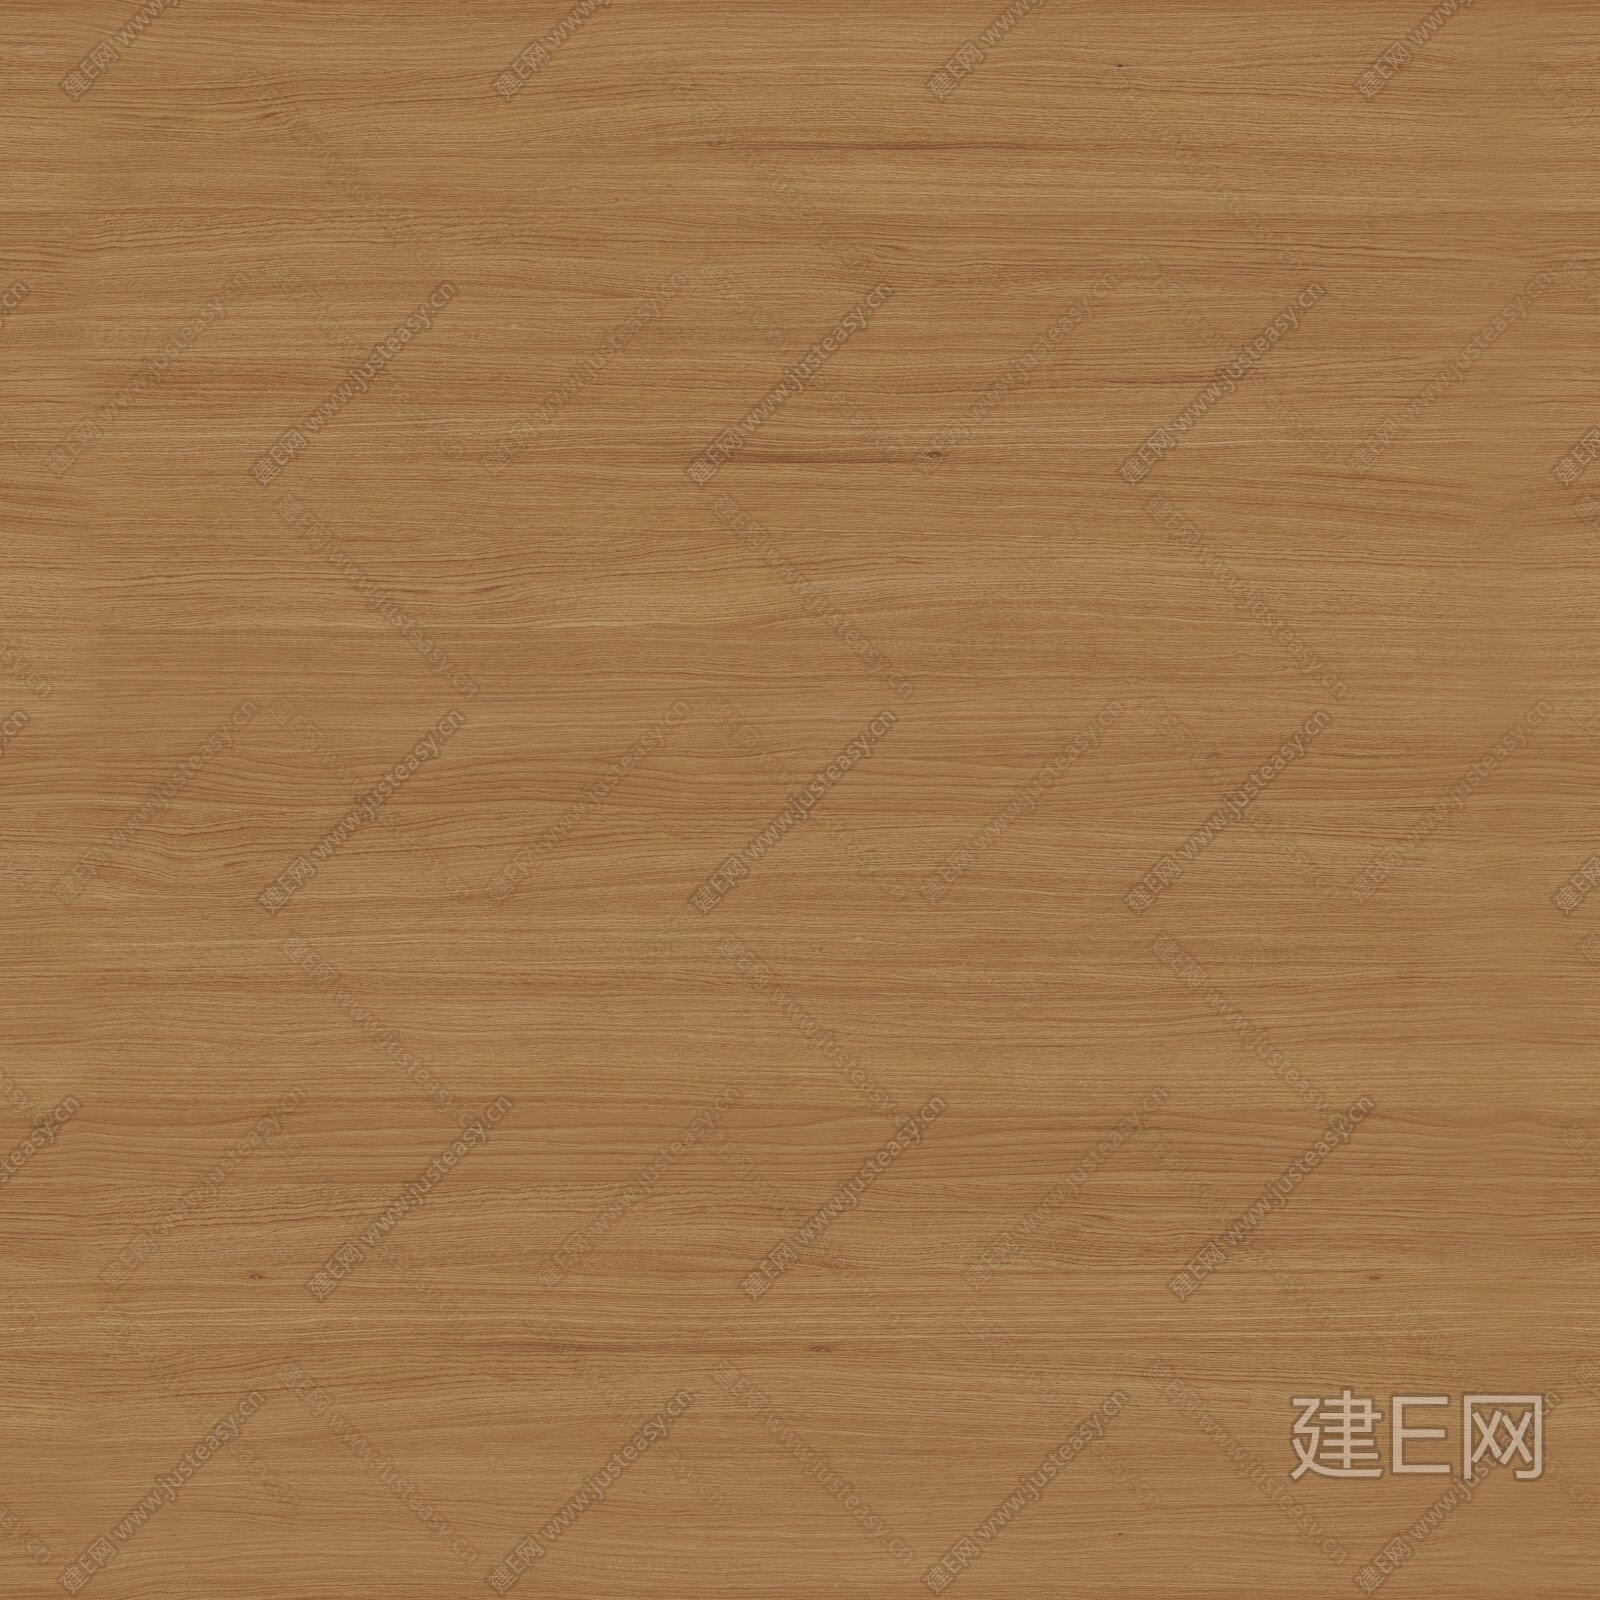 【木纹贴图库】-PNG木纹贴图下载-ID2372-免费贴图库 - 青模网贴图库